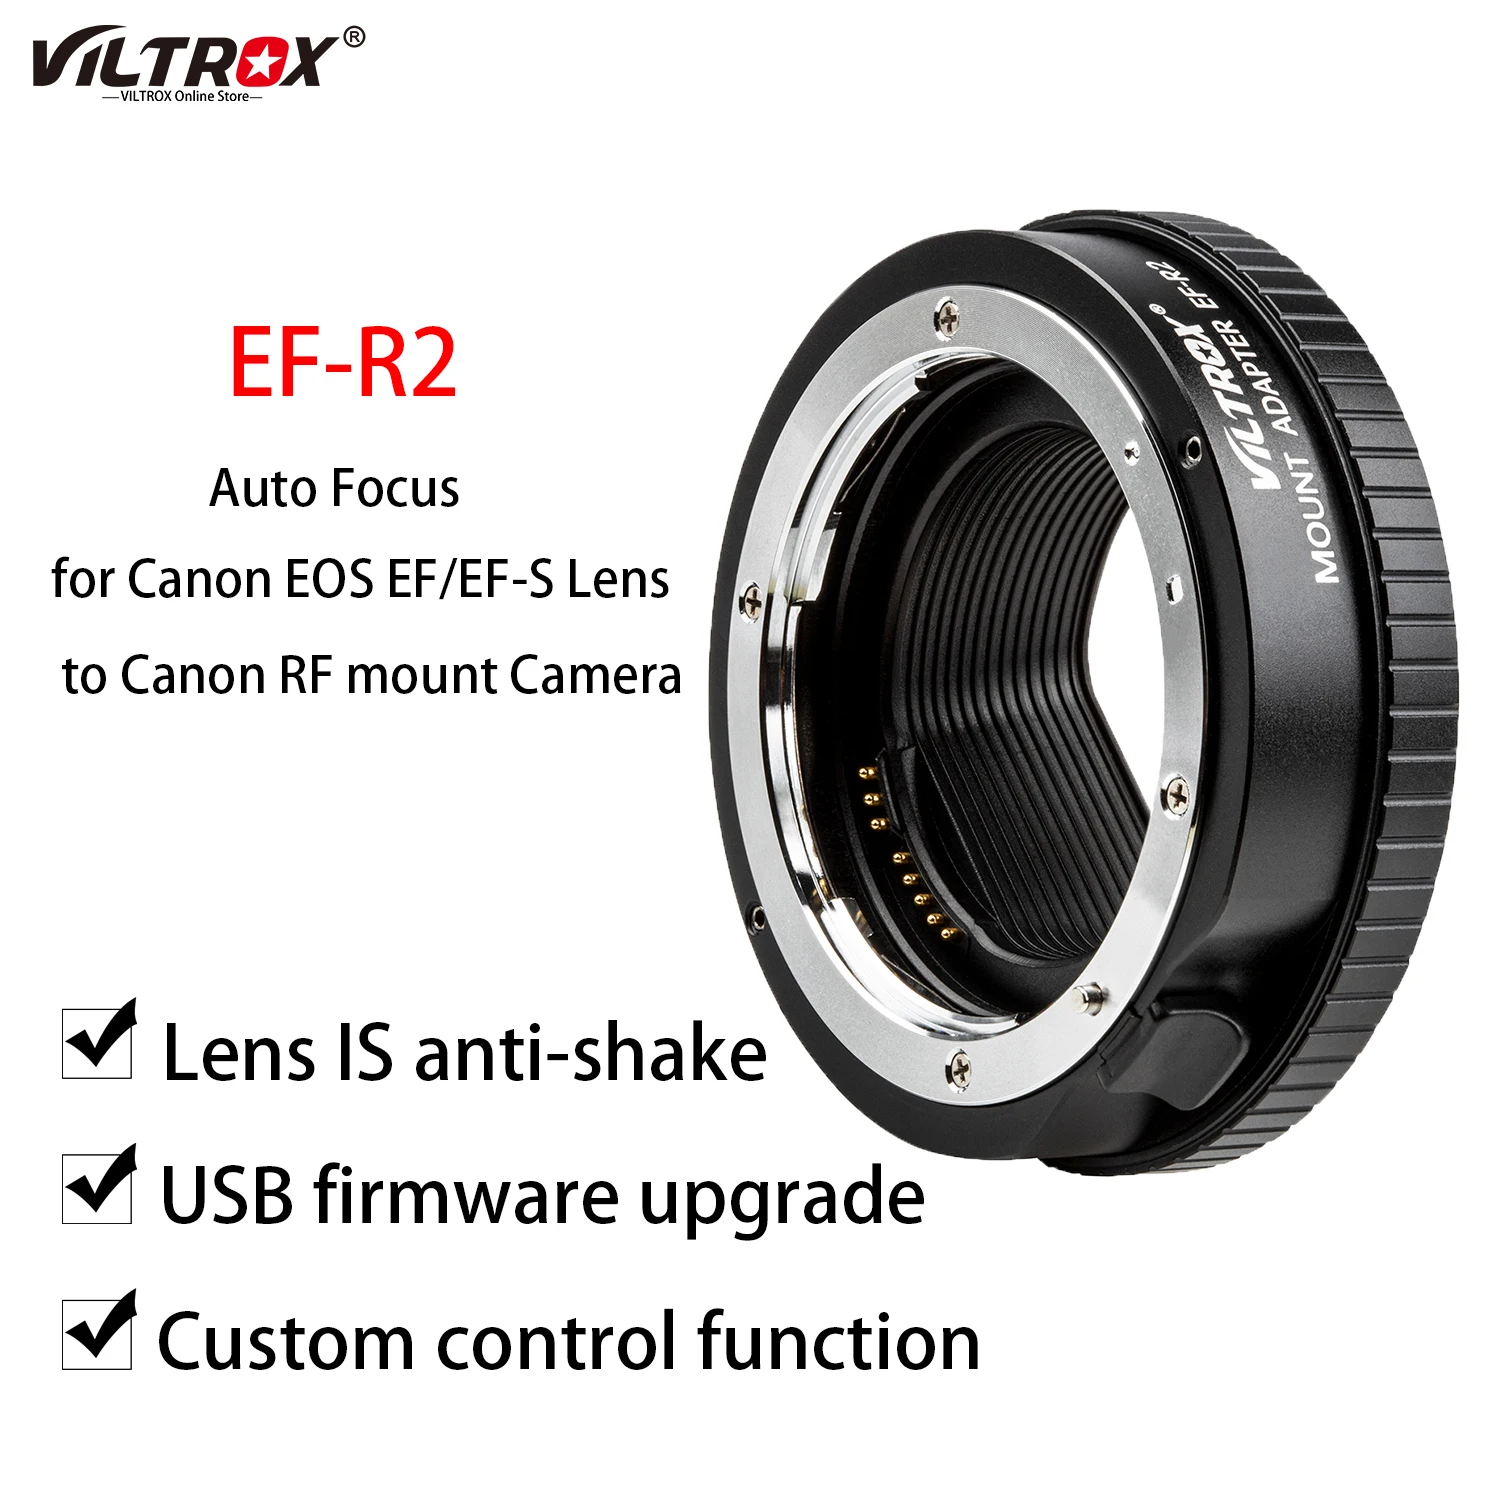 

Кольцо-адаптер Viltrox для крепления объектива с автофокусом для Canon EF/EF-R2 объектив для камеры Canon EOS R с функциональным кольцом управления